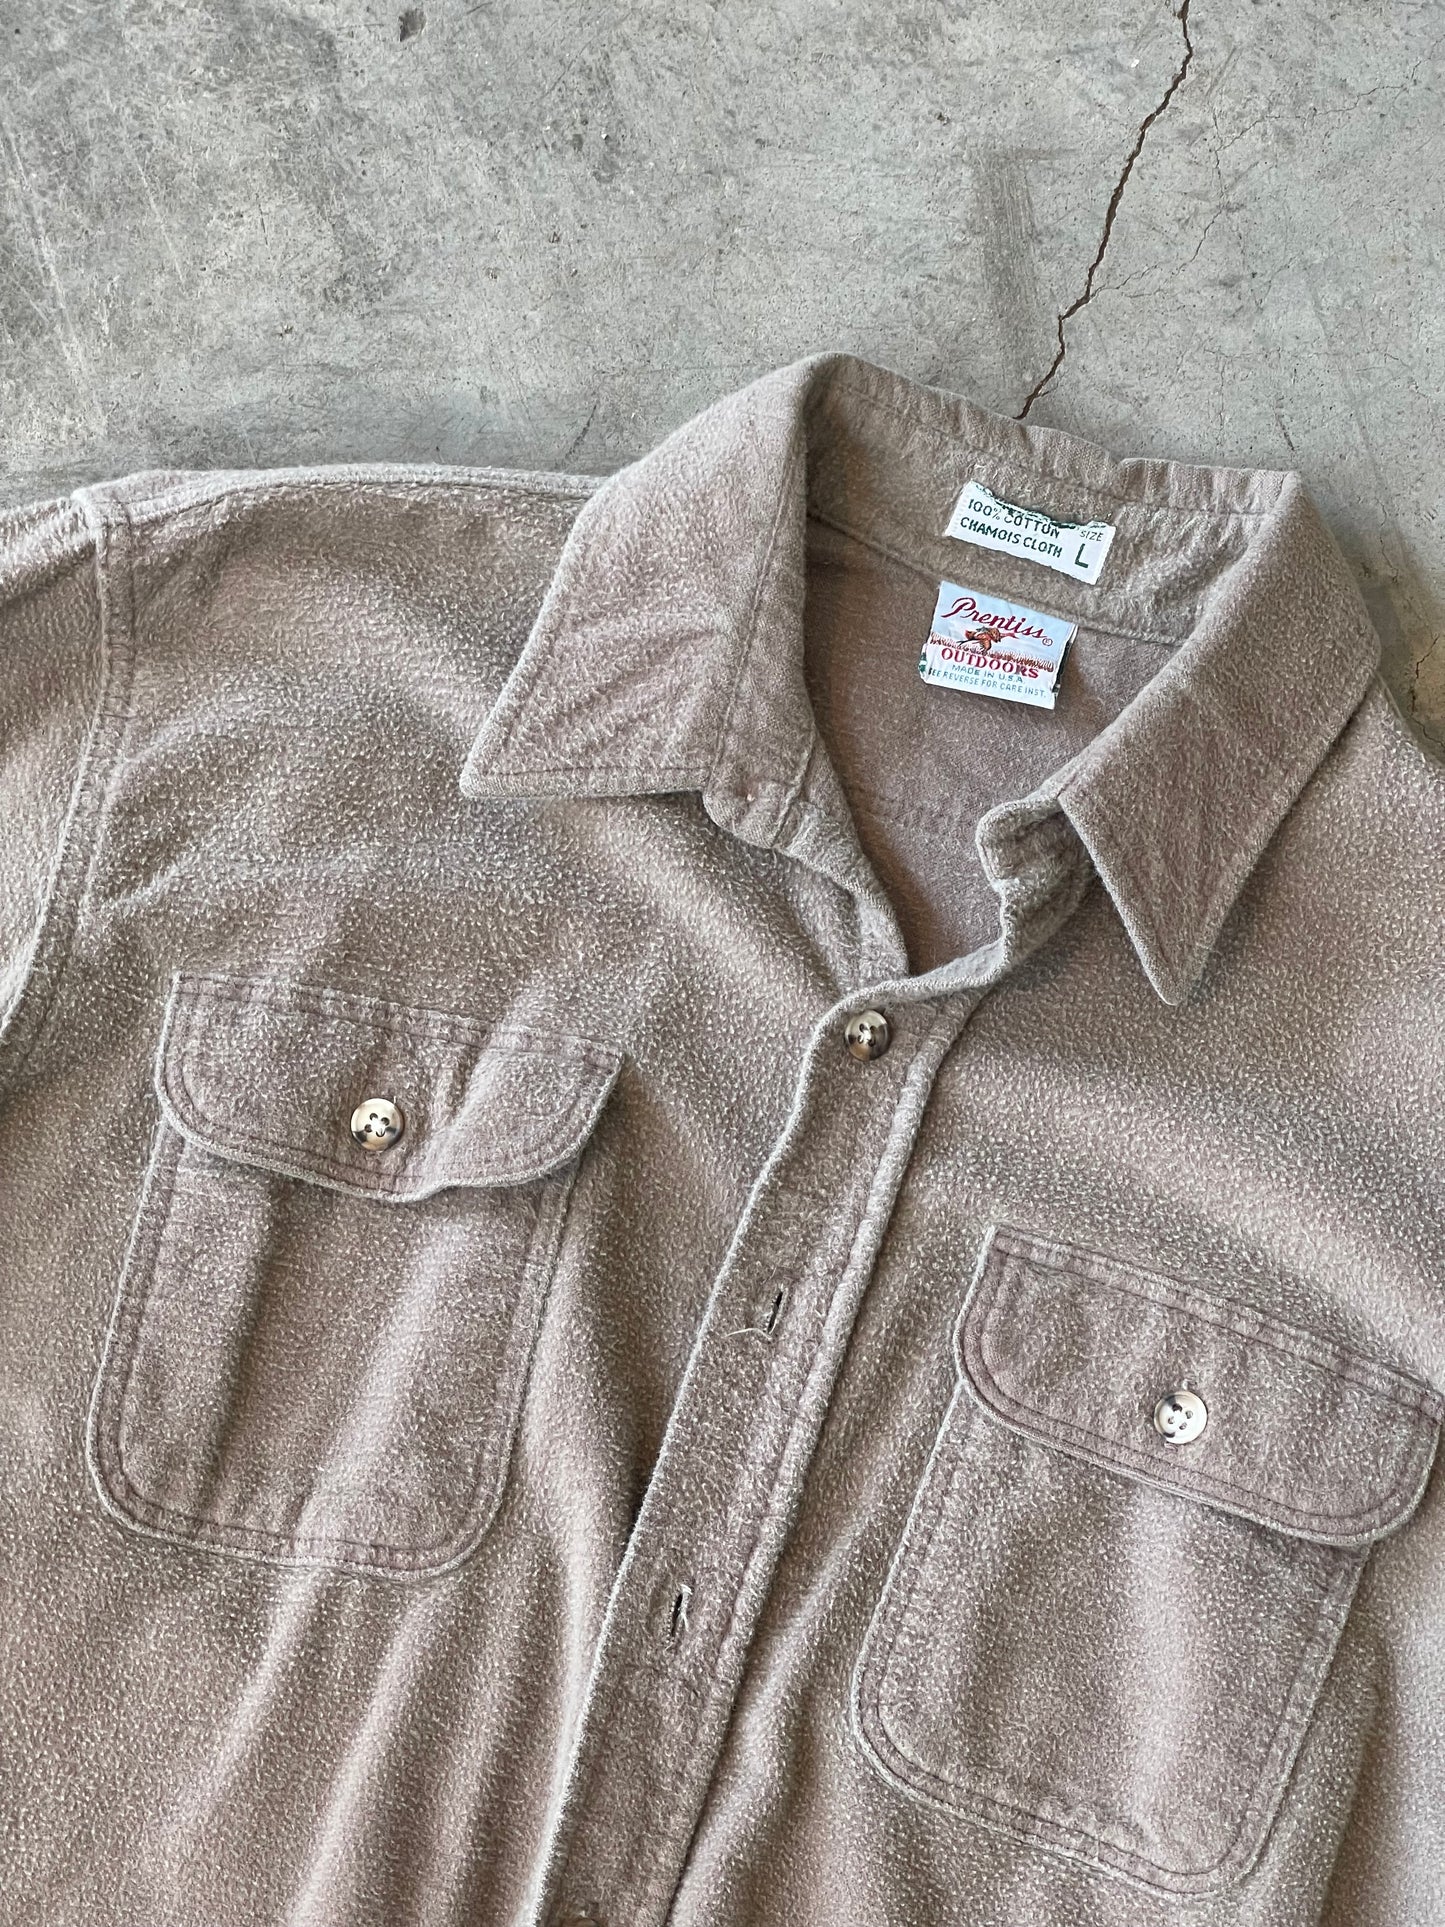 Prentiss Outdoor Chamois Cloth Flannel Button Down—L